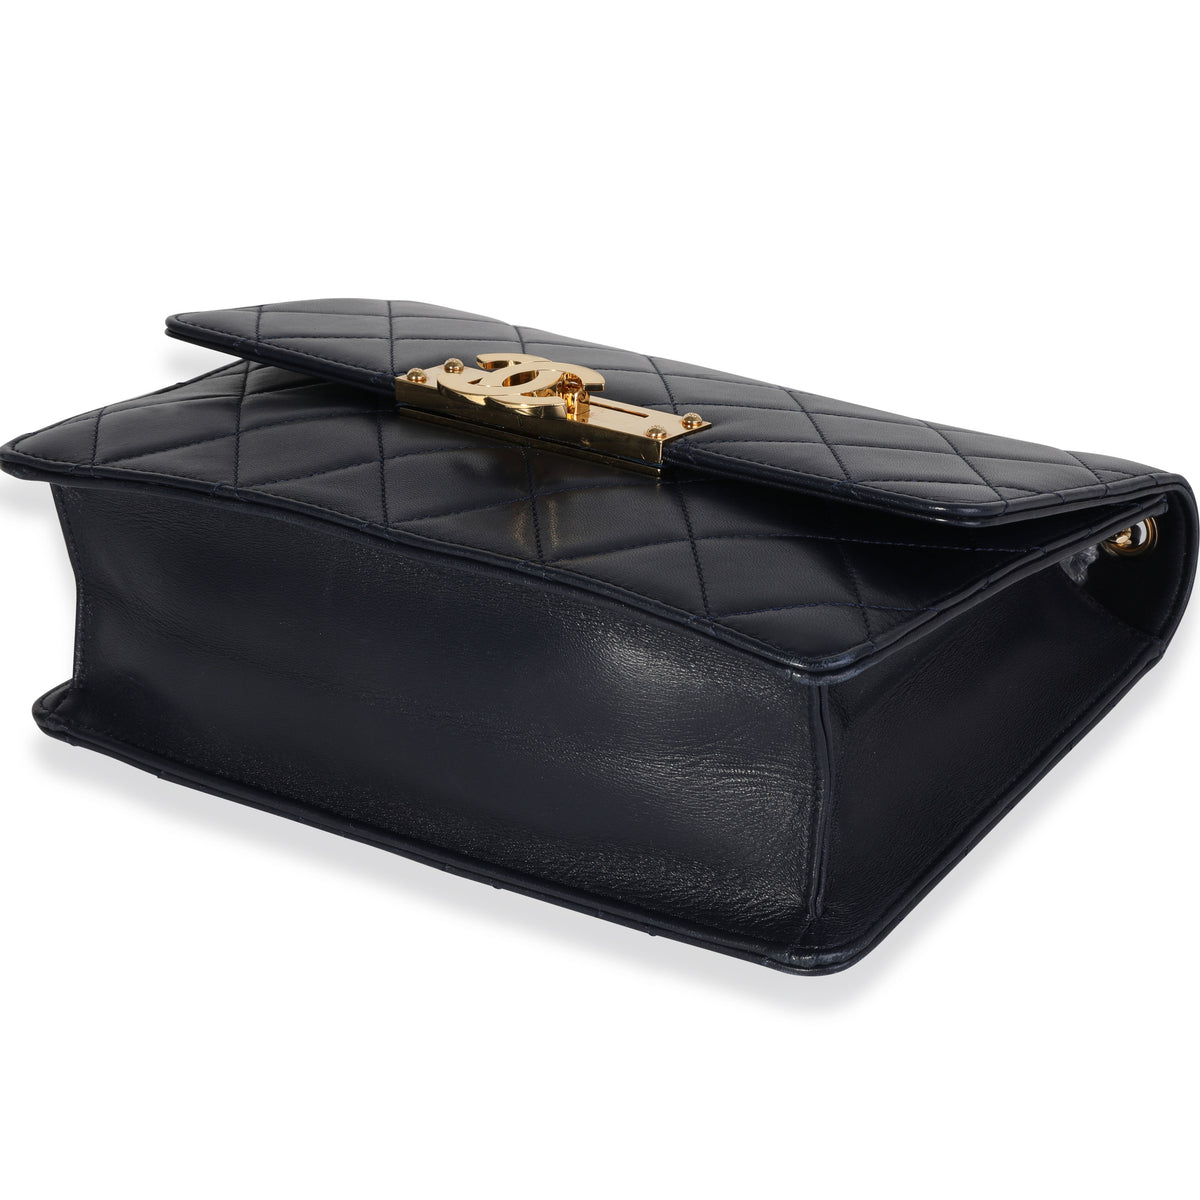 Chanel Navy Quilted Lambskin Medium Golden Class Flap Bag, myGemma